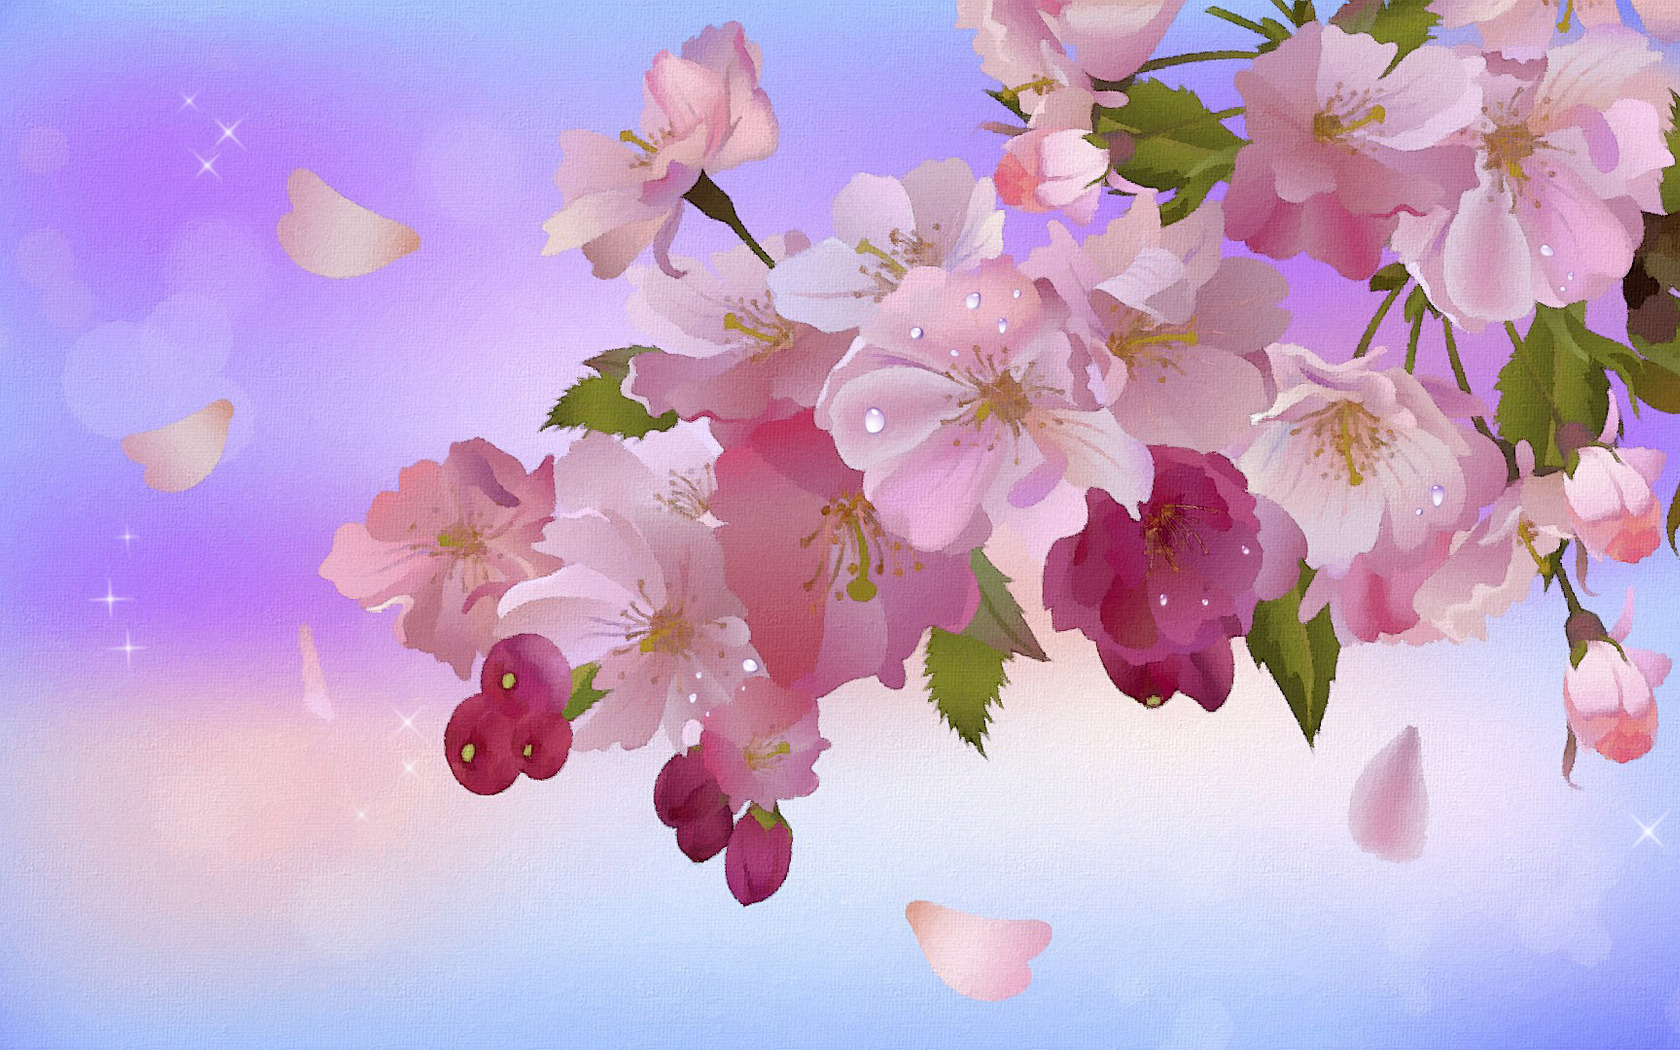 Descarga gratis la imagen Plantas, Flores, Imágenes en el escritorio de tu PC